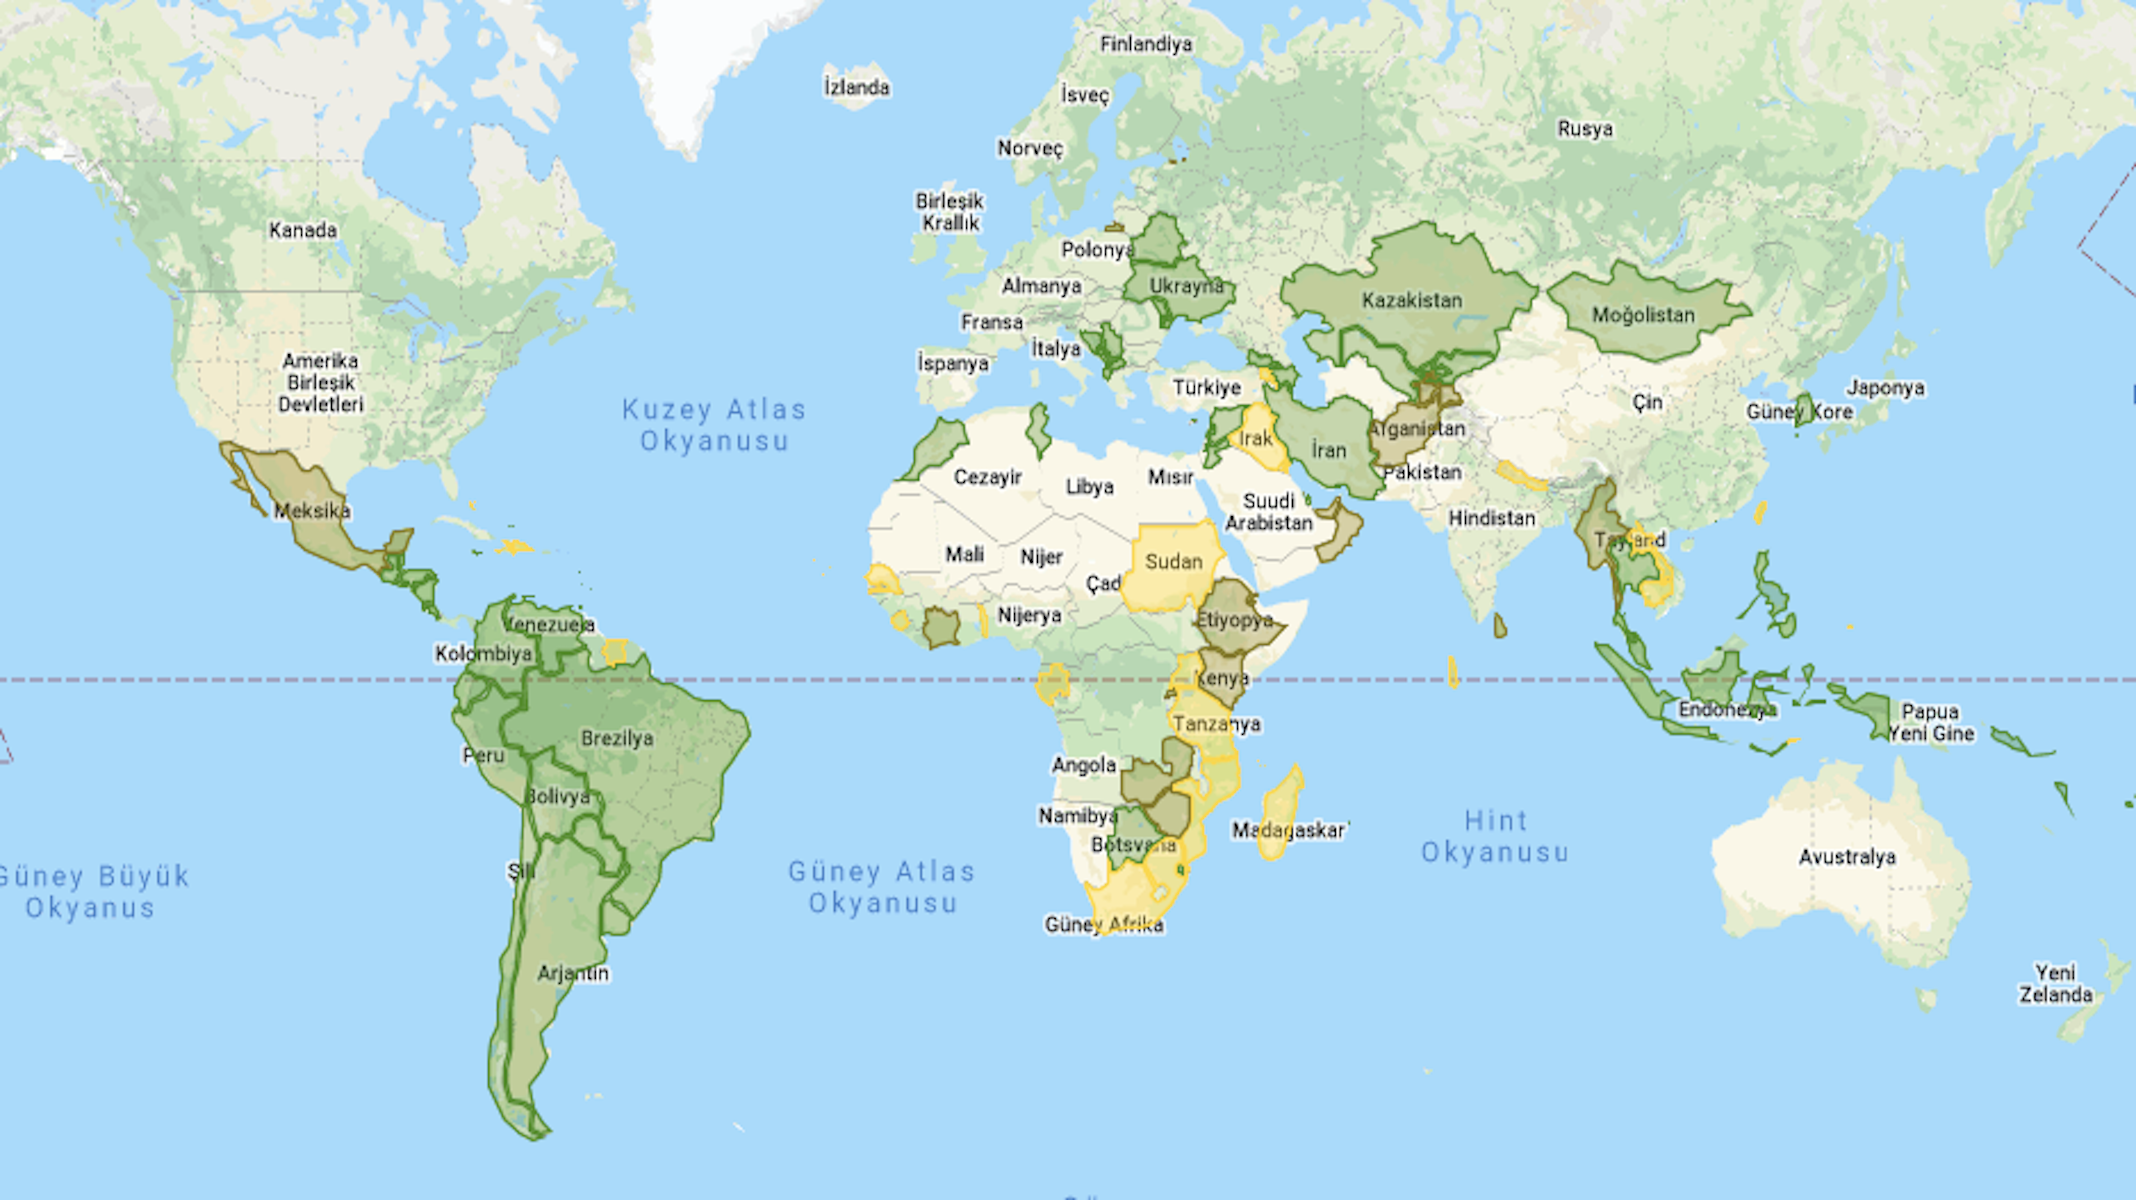 Vizesiz gidilebilen 16 Asya ülkesi